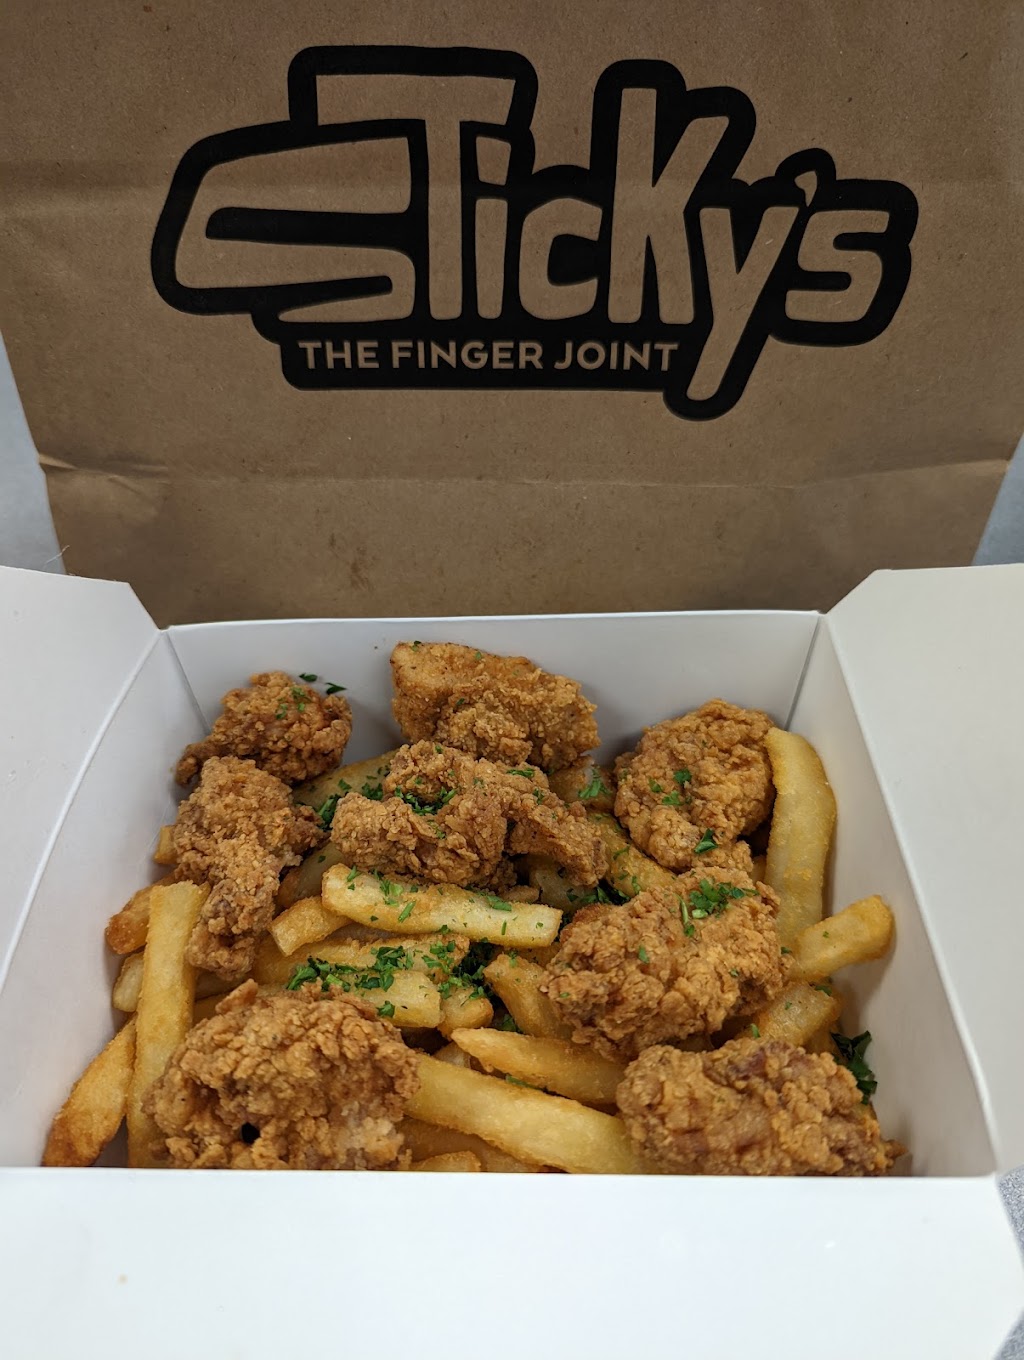 Stickys Finger Joint | restaurant | 112 Washington St, Hoboken, NJ 07030, USA | 5512201300 OR +1 551-220-1300